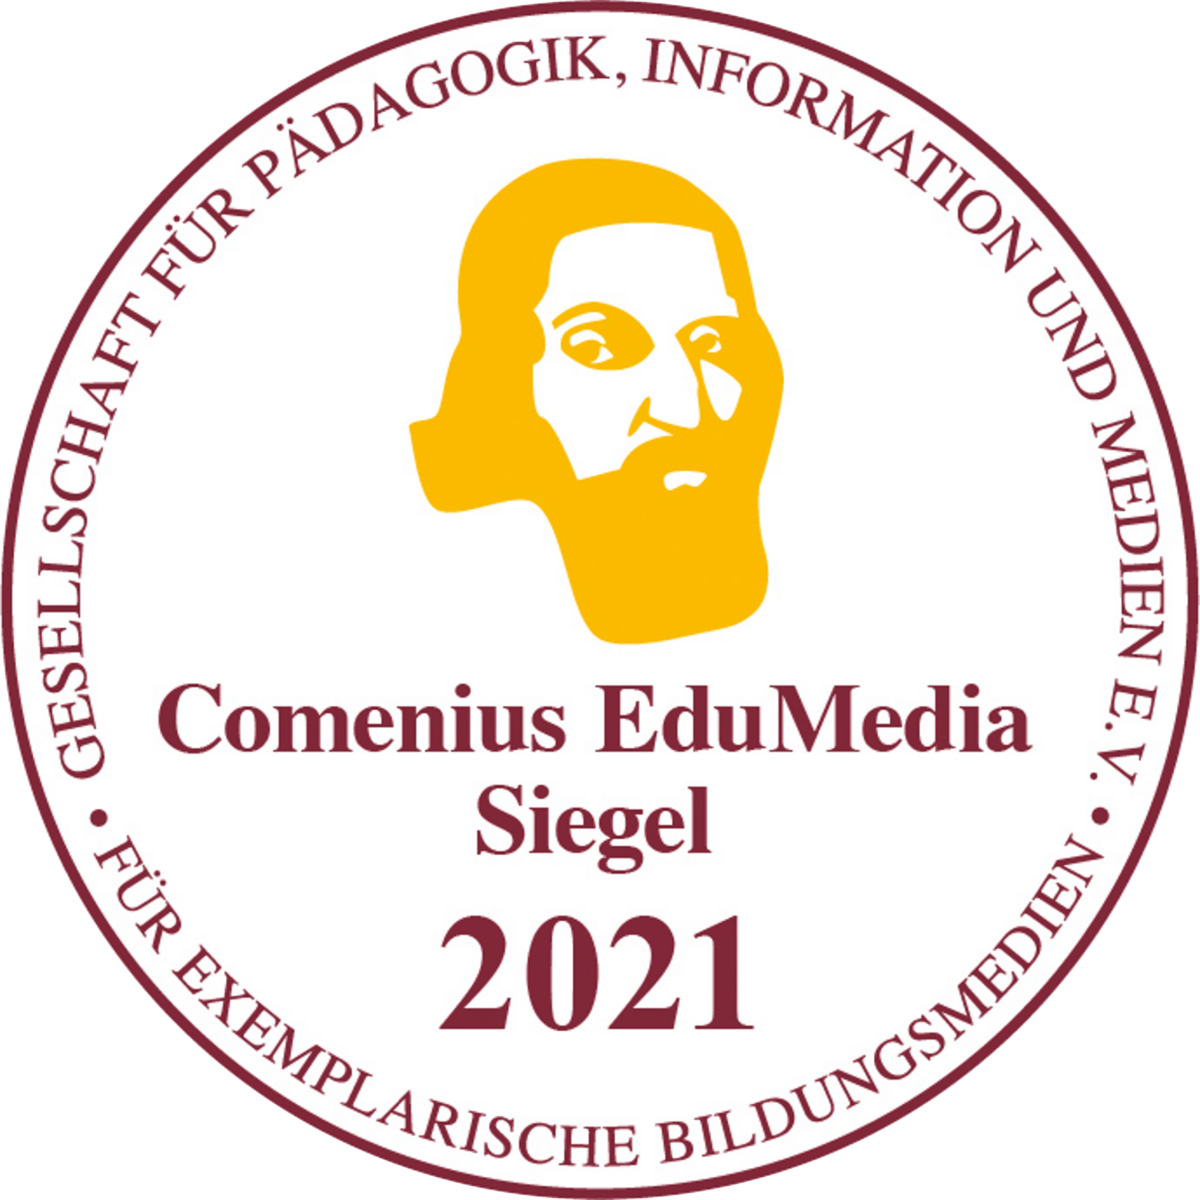 Comenius EduMedia Siegel 2021